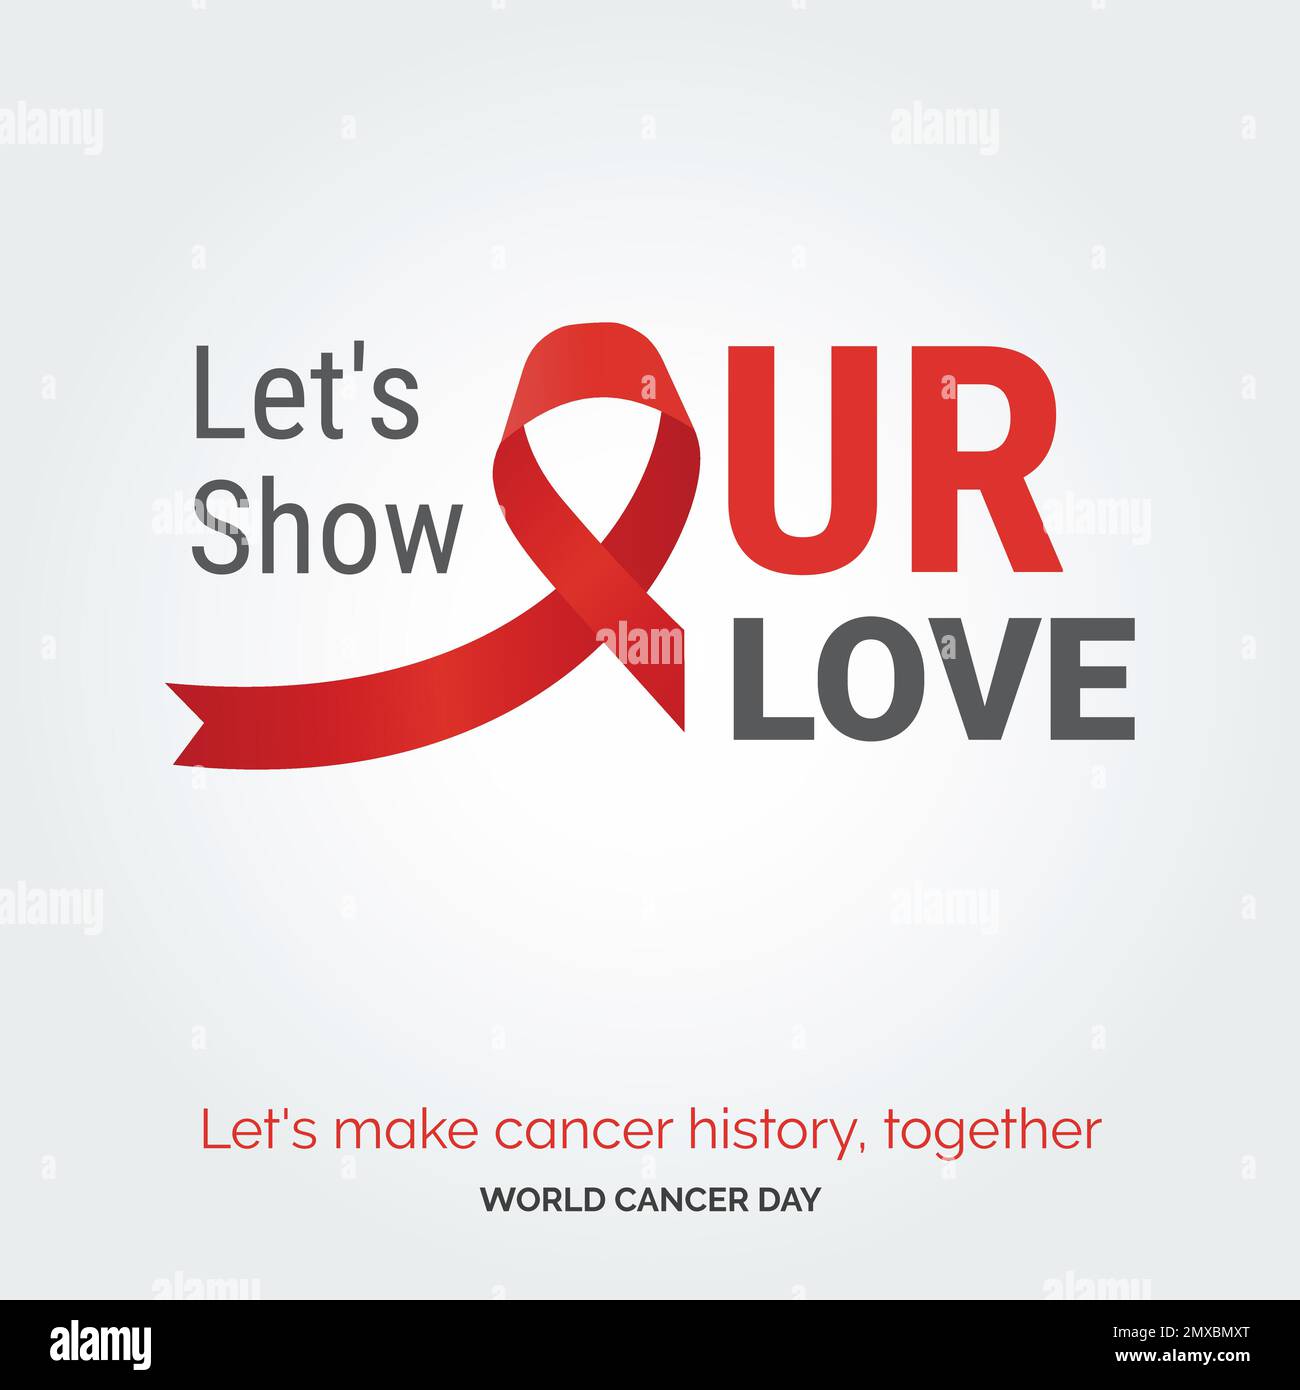 Découvrons notre typographie de ruban d'amour. faisons l'histoire du  cancer. Ensemble - Journée mondiale du cancer Image Vectorielle Stock -  Alamy